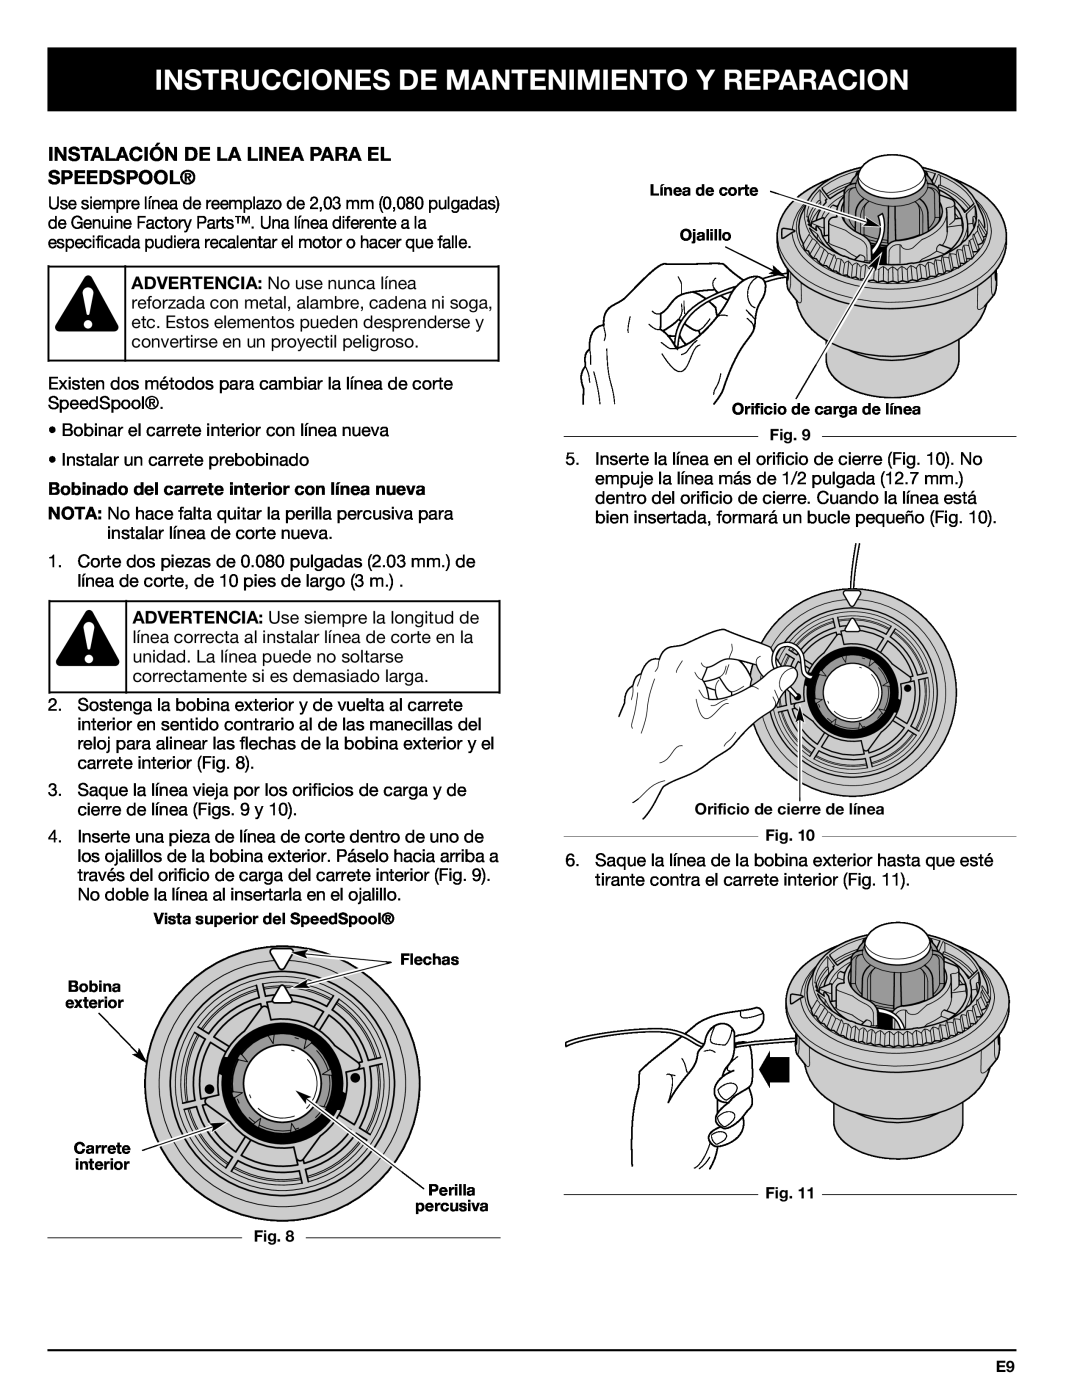 Troy-Bilt 769-00425A manual Instrucciones De Mantenimiento Y Reparacion, Instalación De La Linea Para El Speedspool 